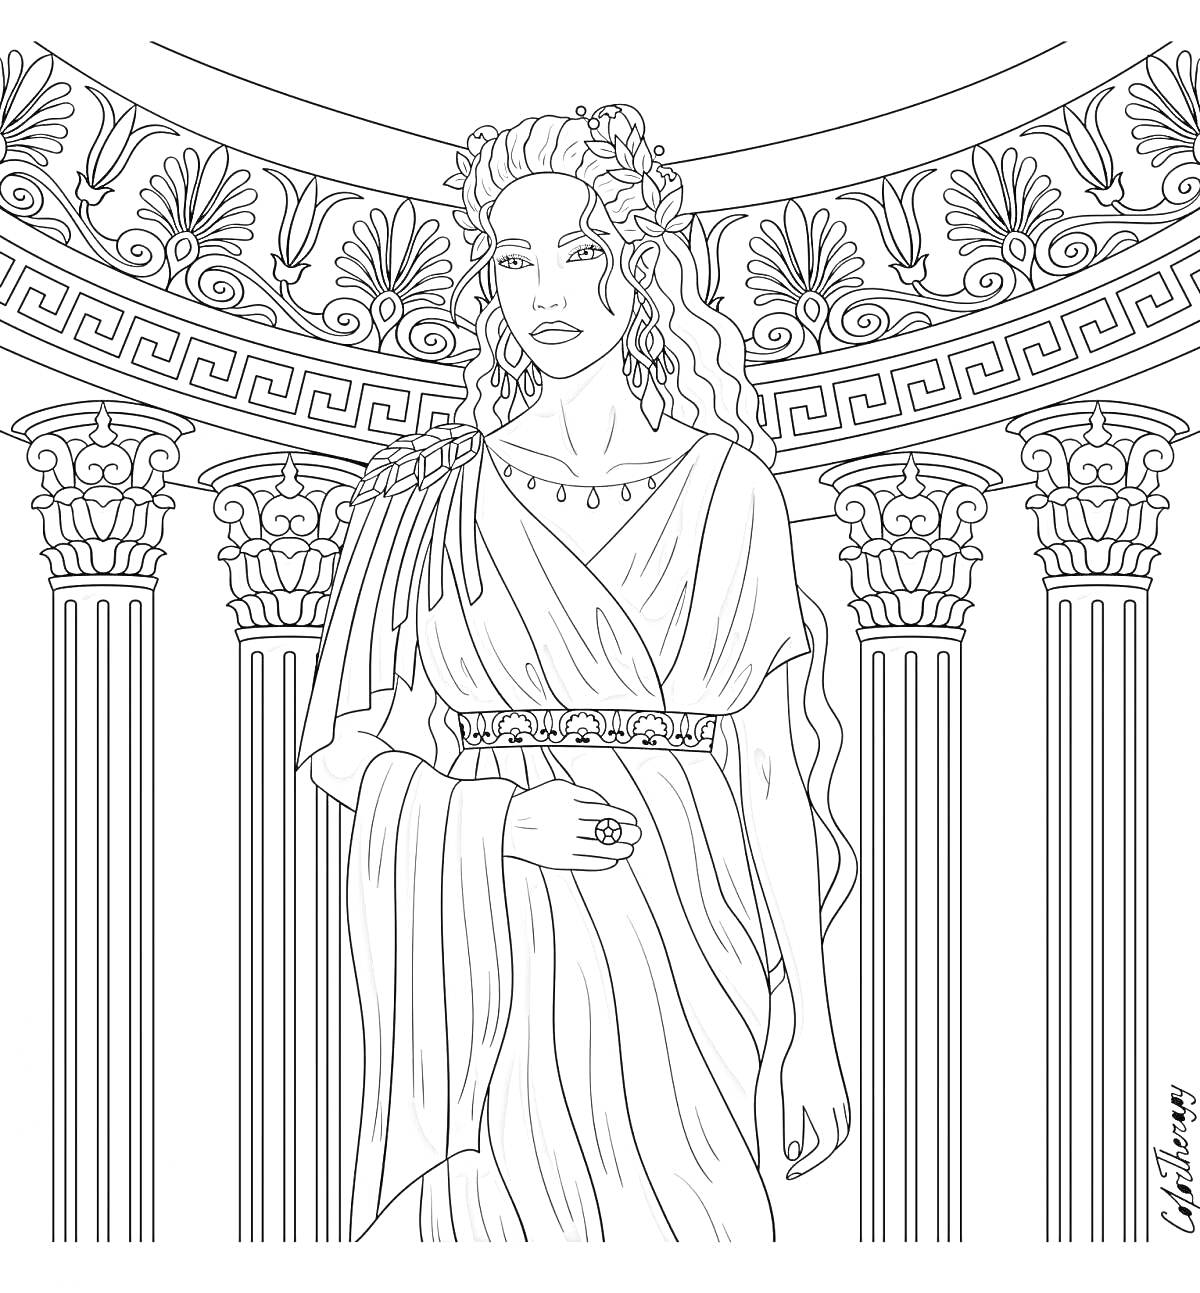 Раскраска Афродита — богиня с венком на голове, в традиционной древнегреческой одежде перед колоннадой с декоративными элементами